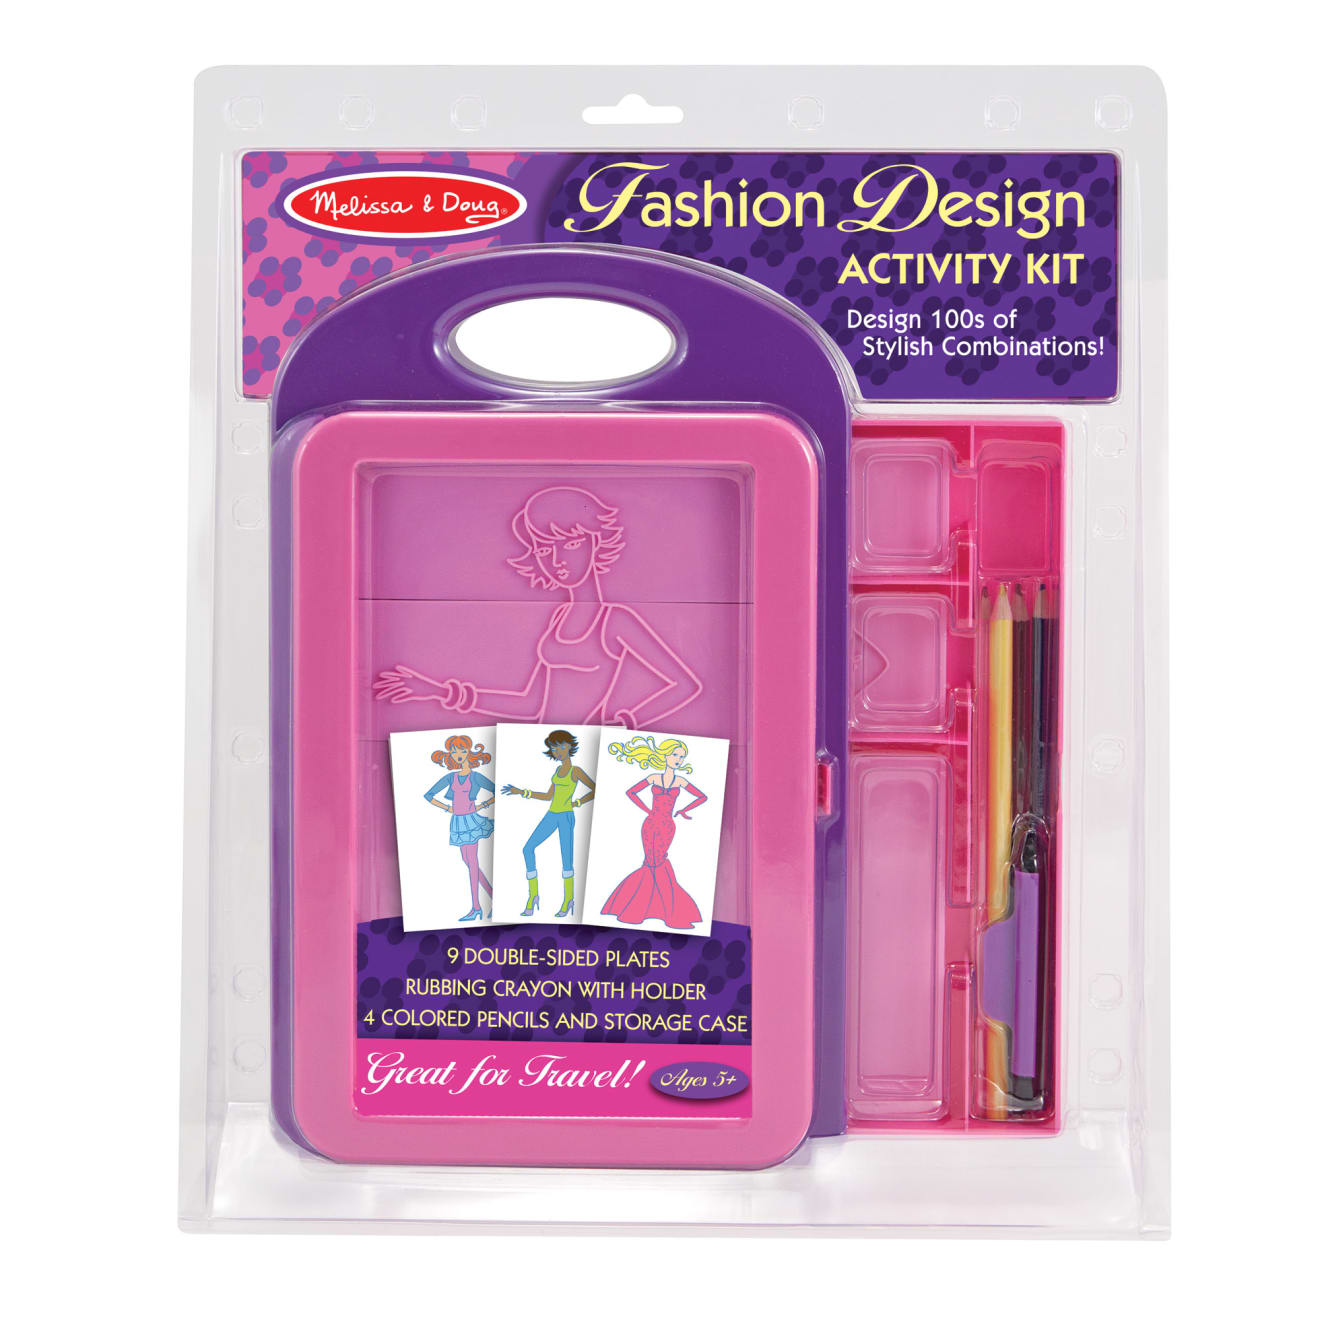 Fashion Design Kit For Girls Basic Reusable Kit For Creativity